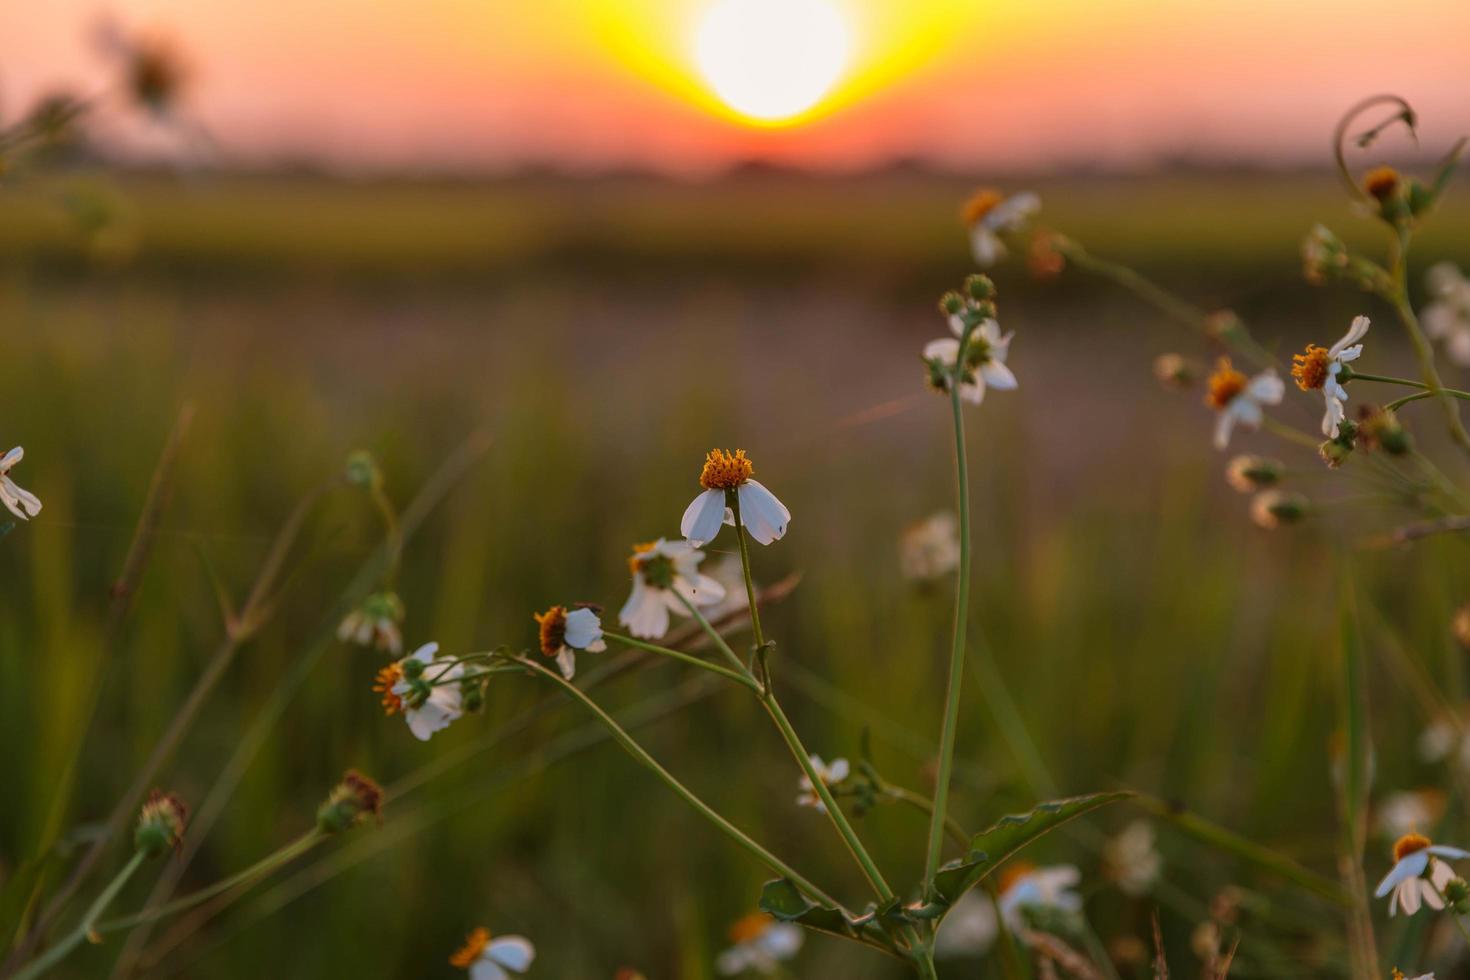 blomman och solnedgången bakgrund foto